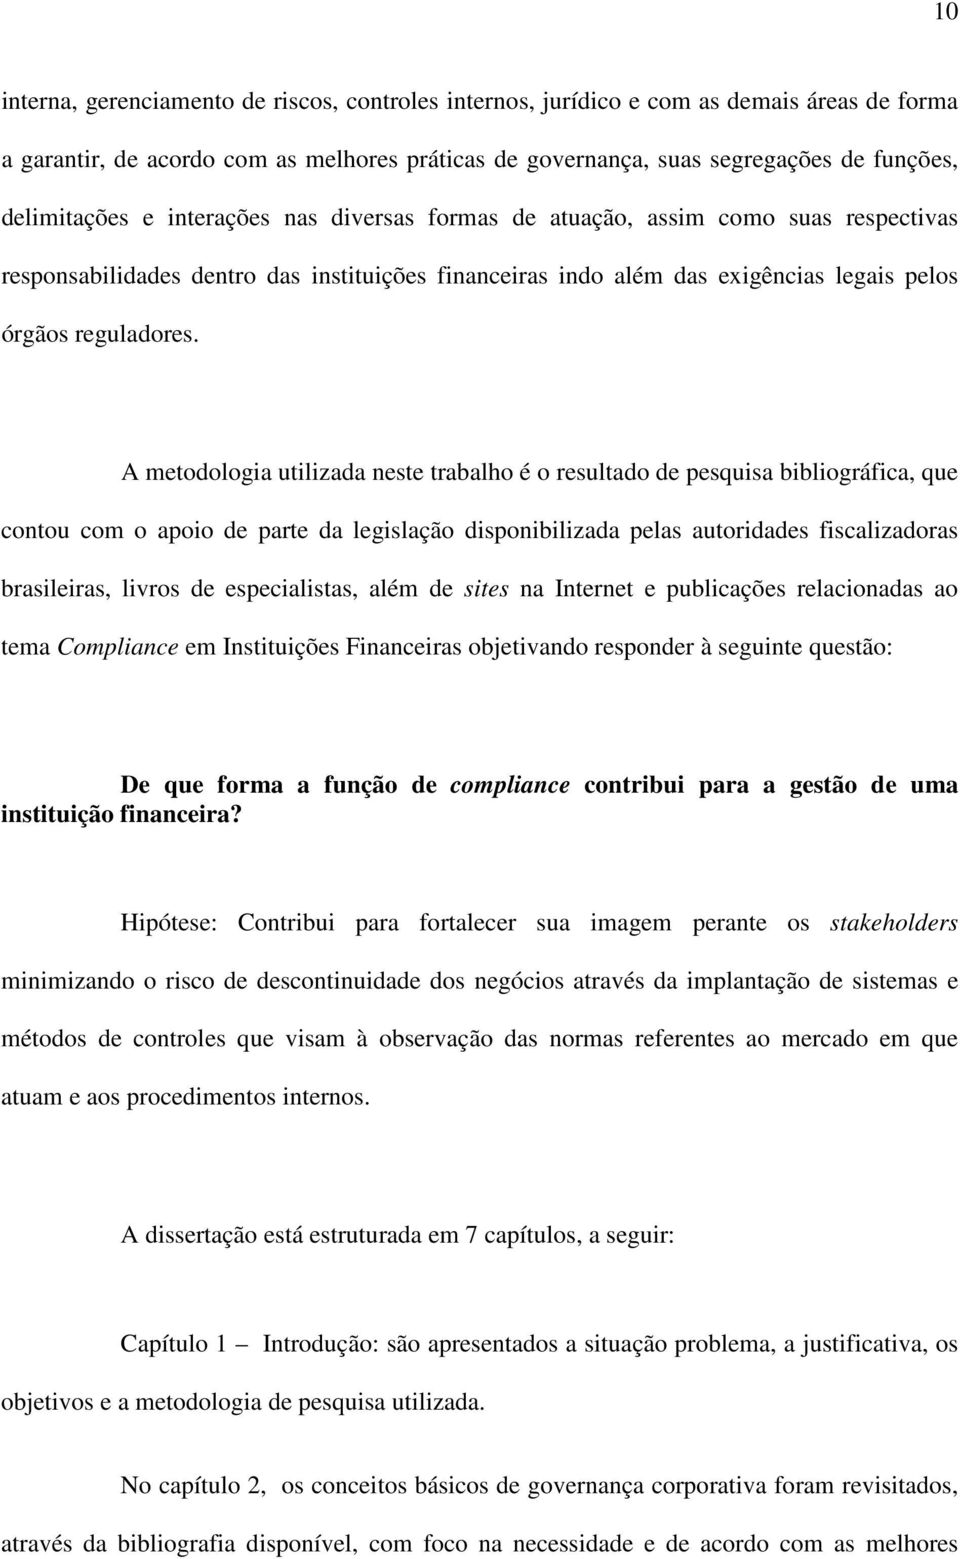 A metodologia utilizada neste trabalho é o resultado de pesquisa bibliográfica, que contou com o apoio de parte da legislação disponibilizada pelas autoridades fiscalizadoras brasileiras, livros de